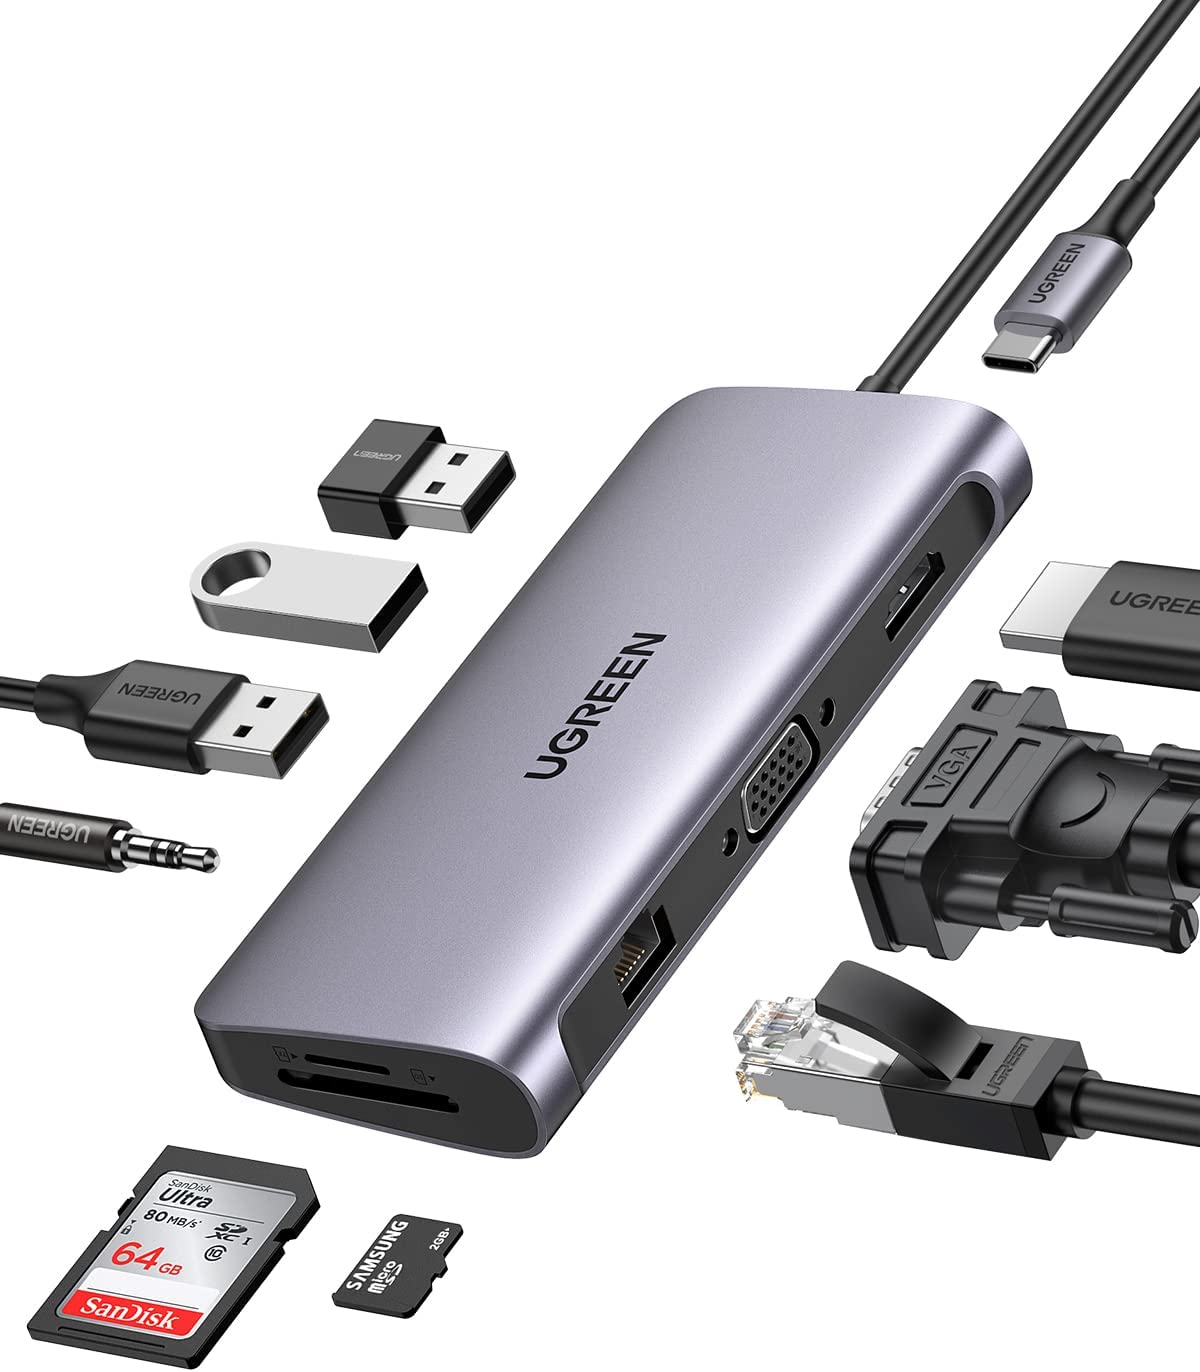 Mini Hub USB C 4 en 1 - Adaptateur USB C vers USB - Adaptateur multiport  pour MacBook Air, MacBook Pro, XPS et Plus - USB Type C - Gris